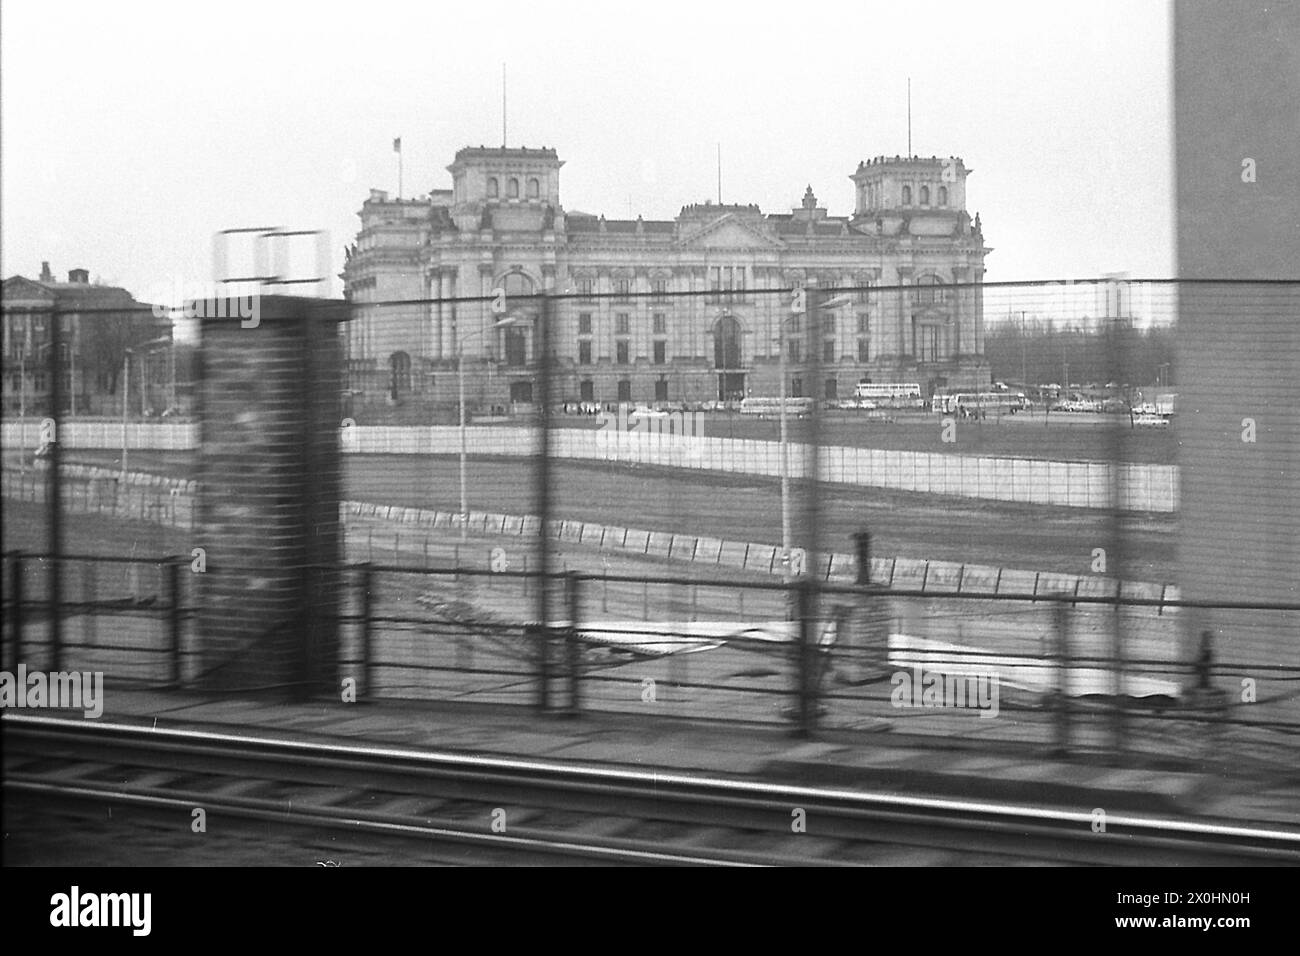 Questa è una foto della storia contemporanea. La S-Bahn e il treno a lunga distanza correvano tra le stazioni di Friedrichstrasse e Lehrter Bahnhof, al confine tra Est e Ovest, per così dire. Si possono vedere le fortificazioni di confine dal lato orientale con recinzioni lungo i binari e le mura fino alla parete finale sulla sponda settentrionale della Sprea. Berlino Ovest iniziò solo sulla riva meridionale della Sprea, appena visibile qui e che fu la rovina dei rifugiati che credevano che il confine fosse in mezzo al fiume. Dietro di esso, il Reichstag rimase senza una nuova cupola per molti anni. [automatizzato Foto Stock